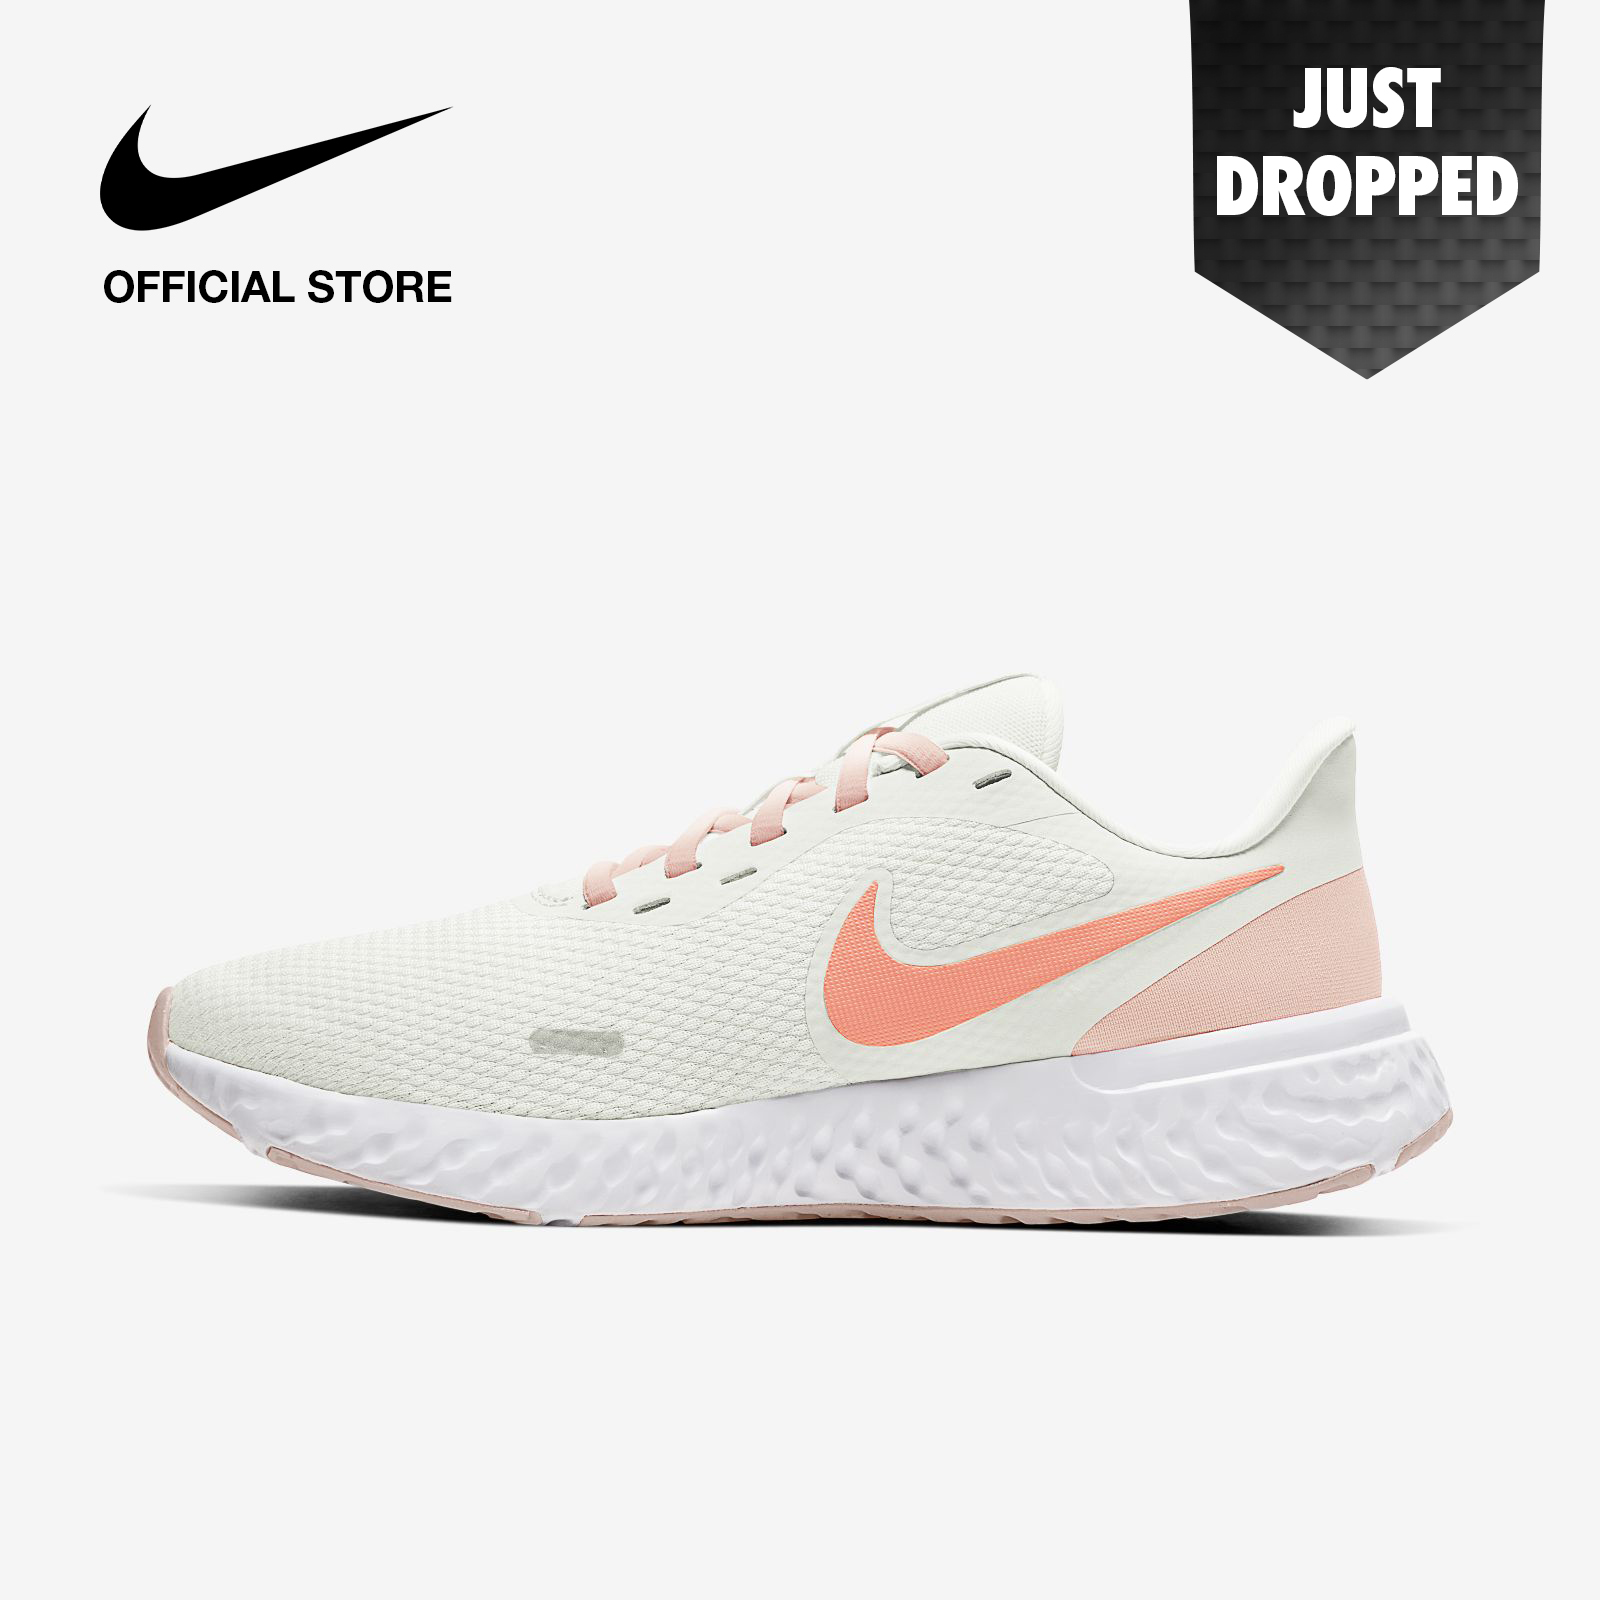 Nike Women's Revolution 5 Running Shoes - Summit White ไนกี้ รองเท้าวิ่งผู้หญิง เรโวลูชั่น 5 - สีขาว